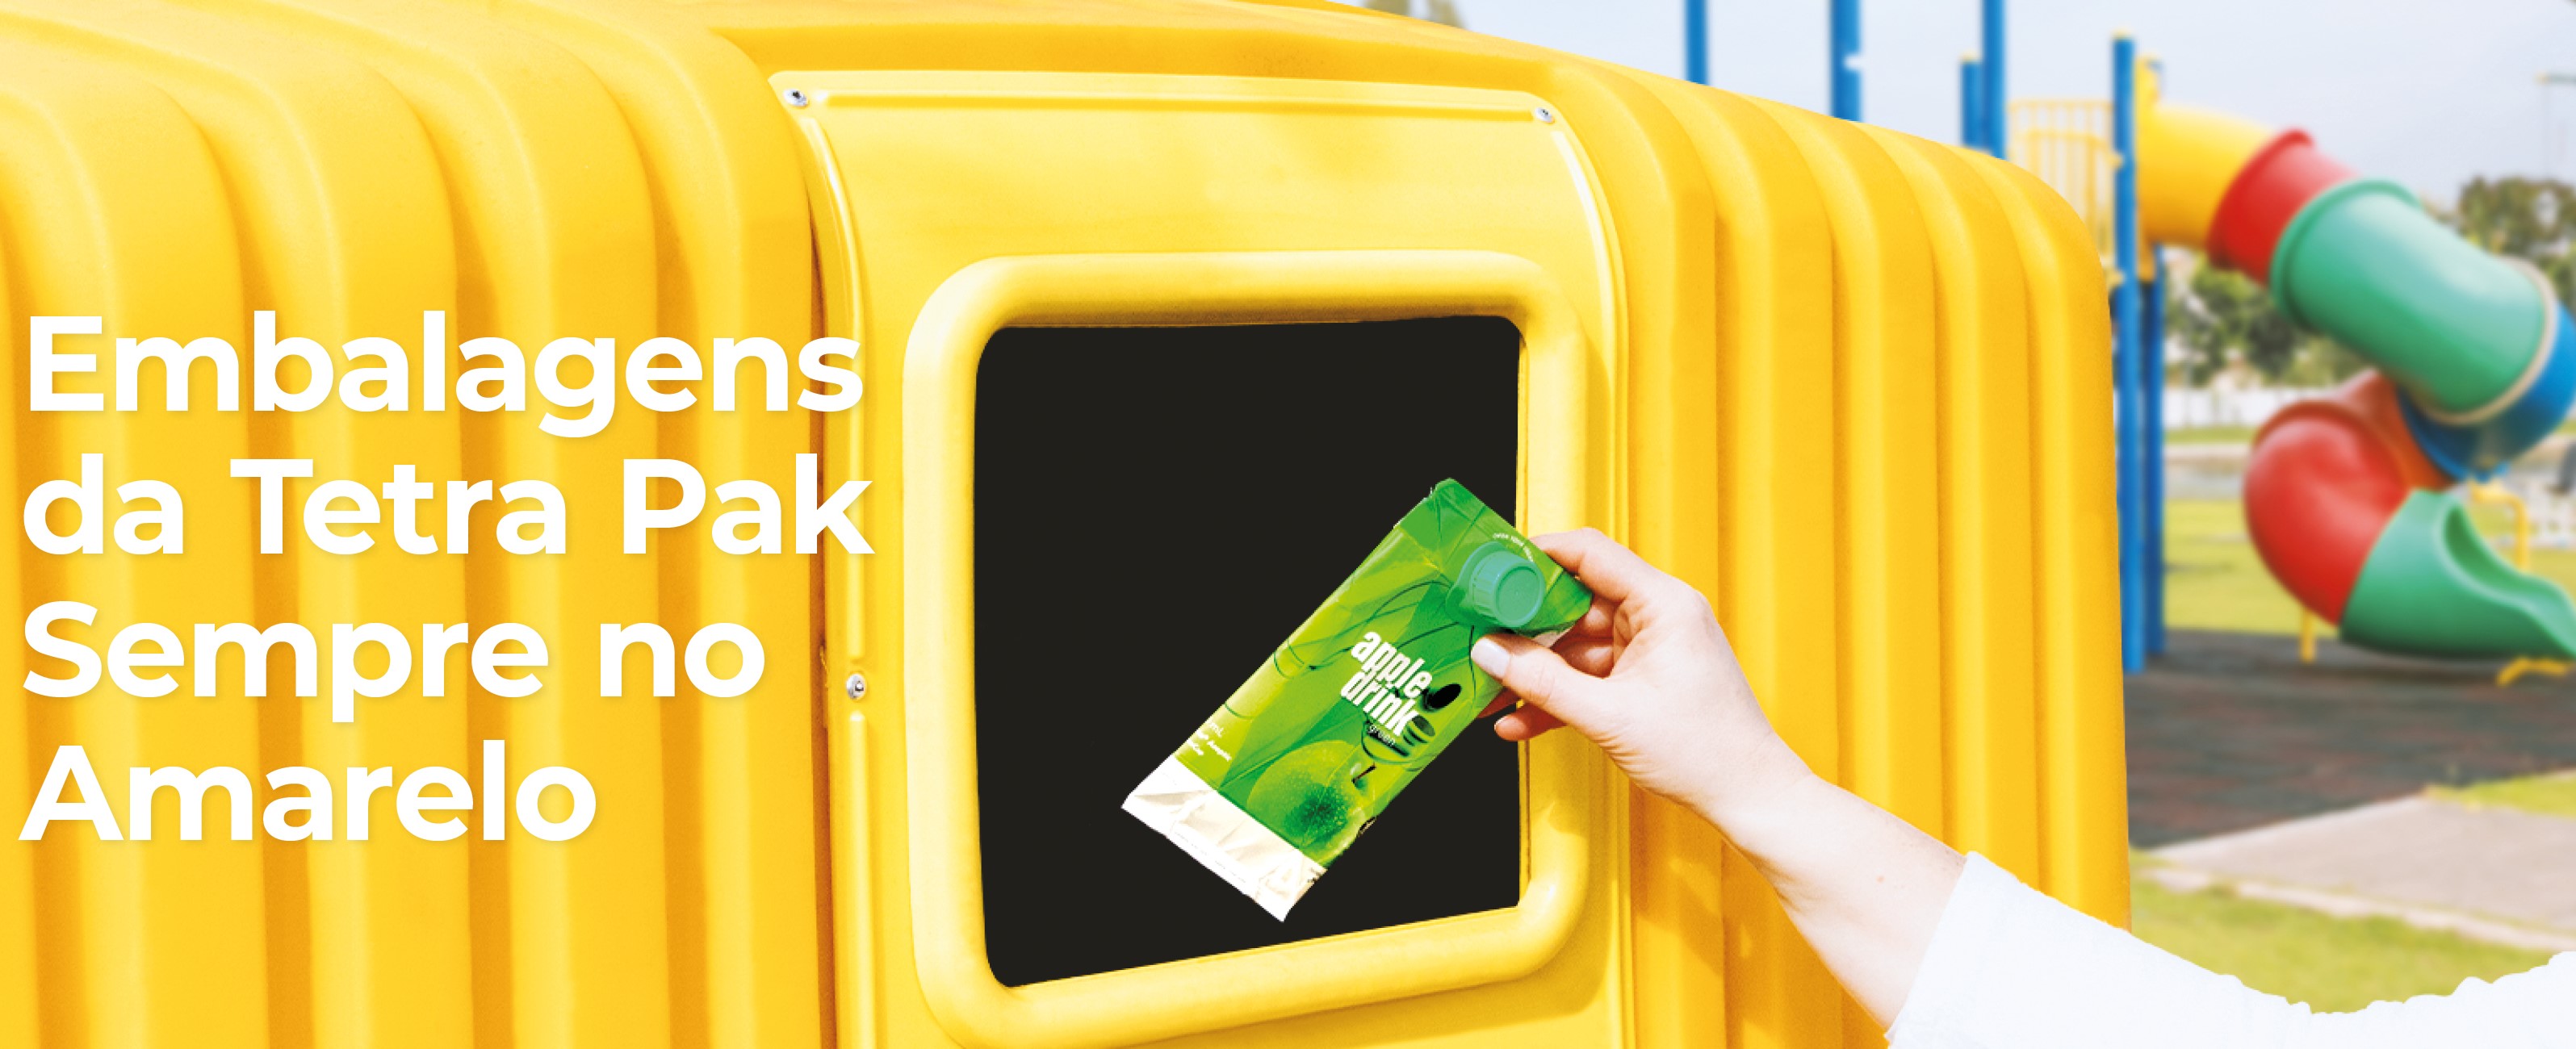 Tetra Pak com o apoio da Sociedade Ponto Verde lança campanha de reciclagem “Sempre no Amarelo”